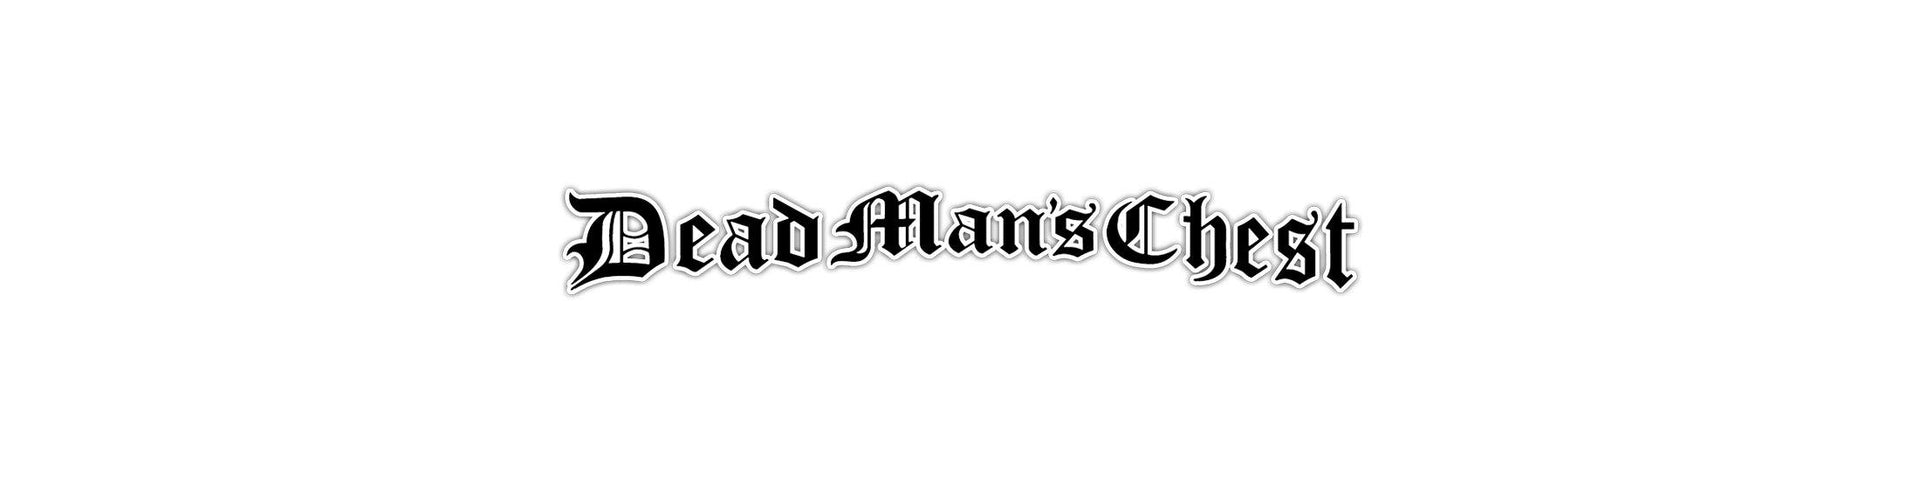 Shop – Dead Man's Chest – Band & Music Merch – Cold Cuts Merch